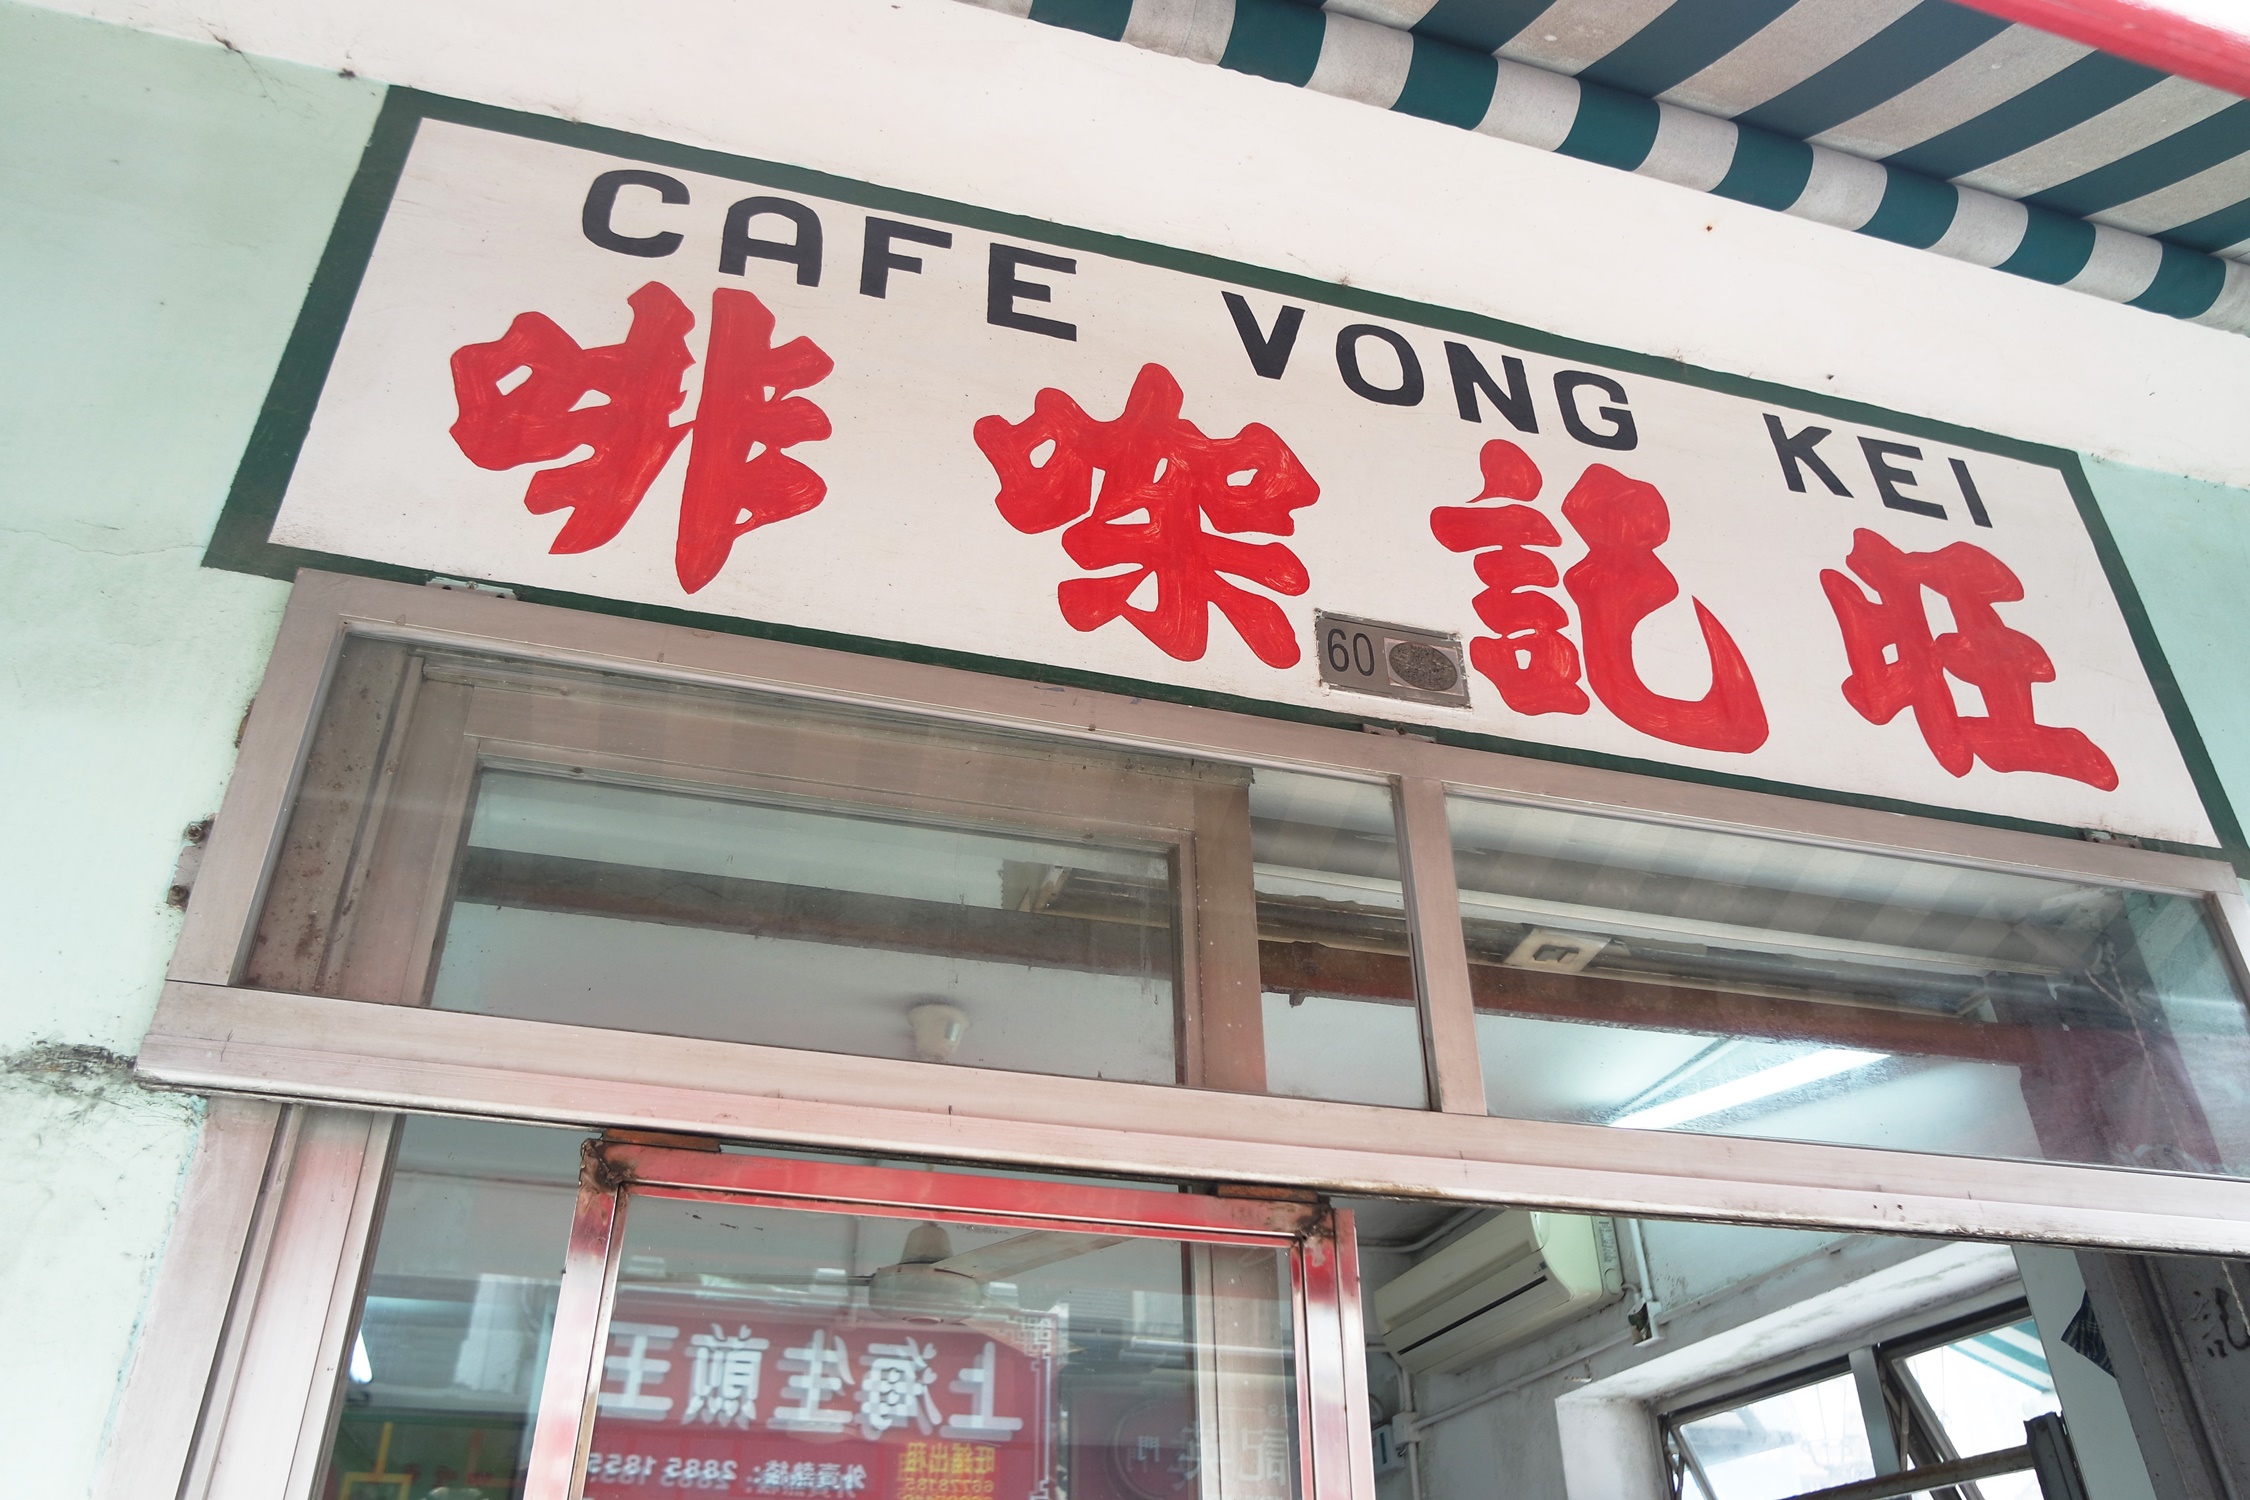 Cafe Vong Kei at Old Taipa Village